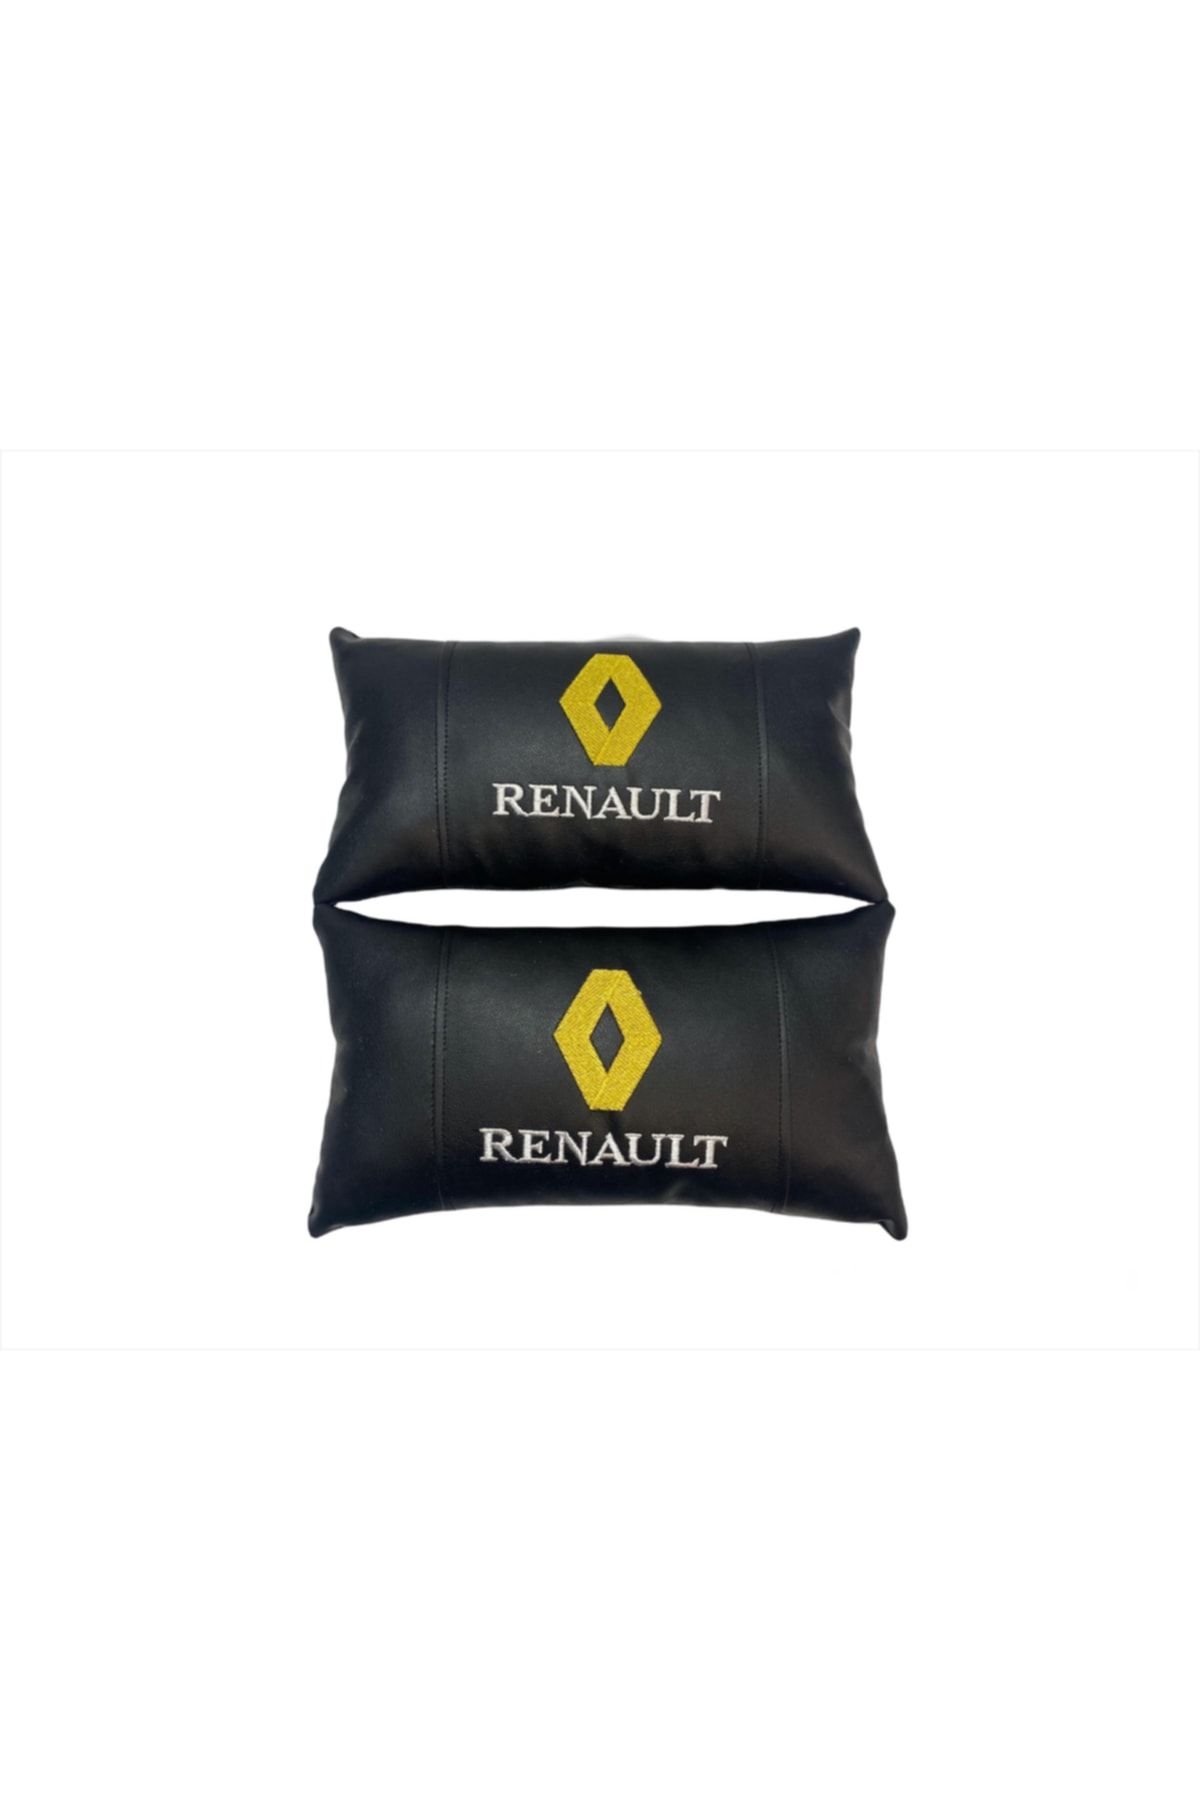 Merve Nakış Renault Boyun Yastığı Lüks Deri 2 Adet Ortopedik Boyun Yastığı- Siyah Renk 2 Adet